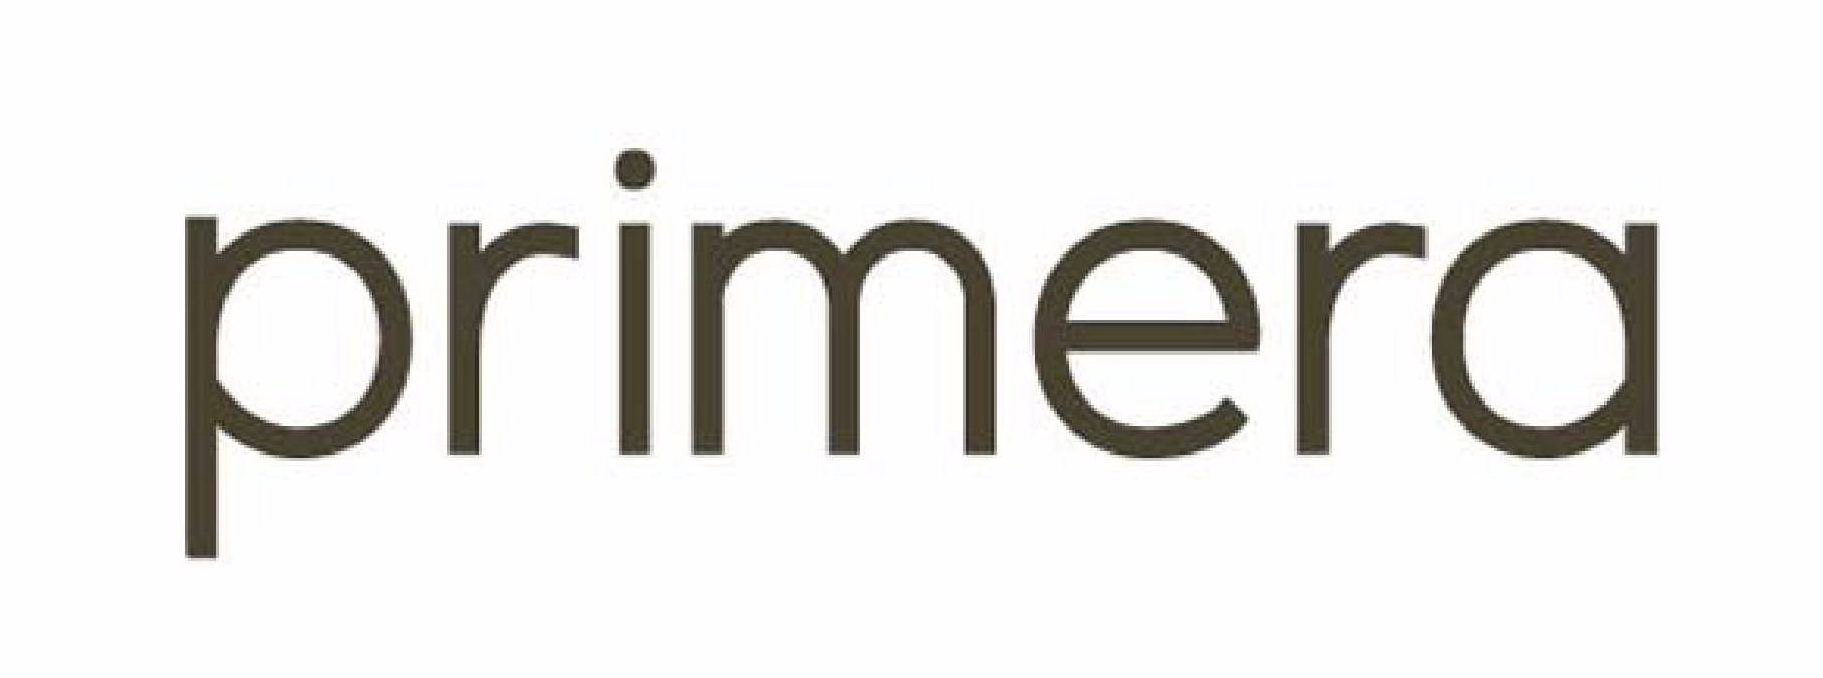 Trademark Logo PRIMERA